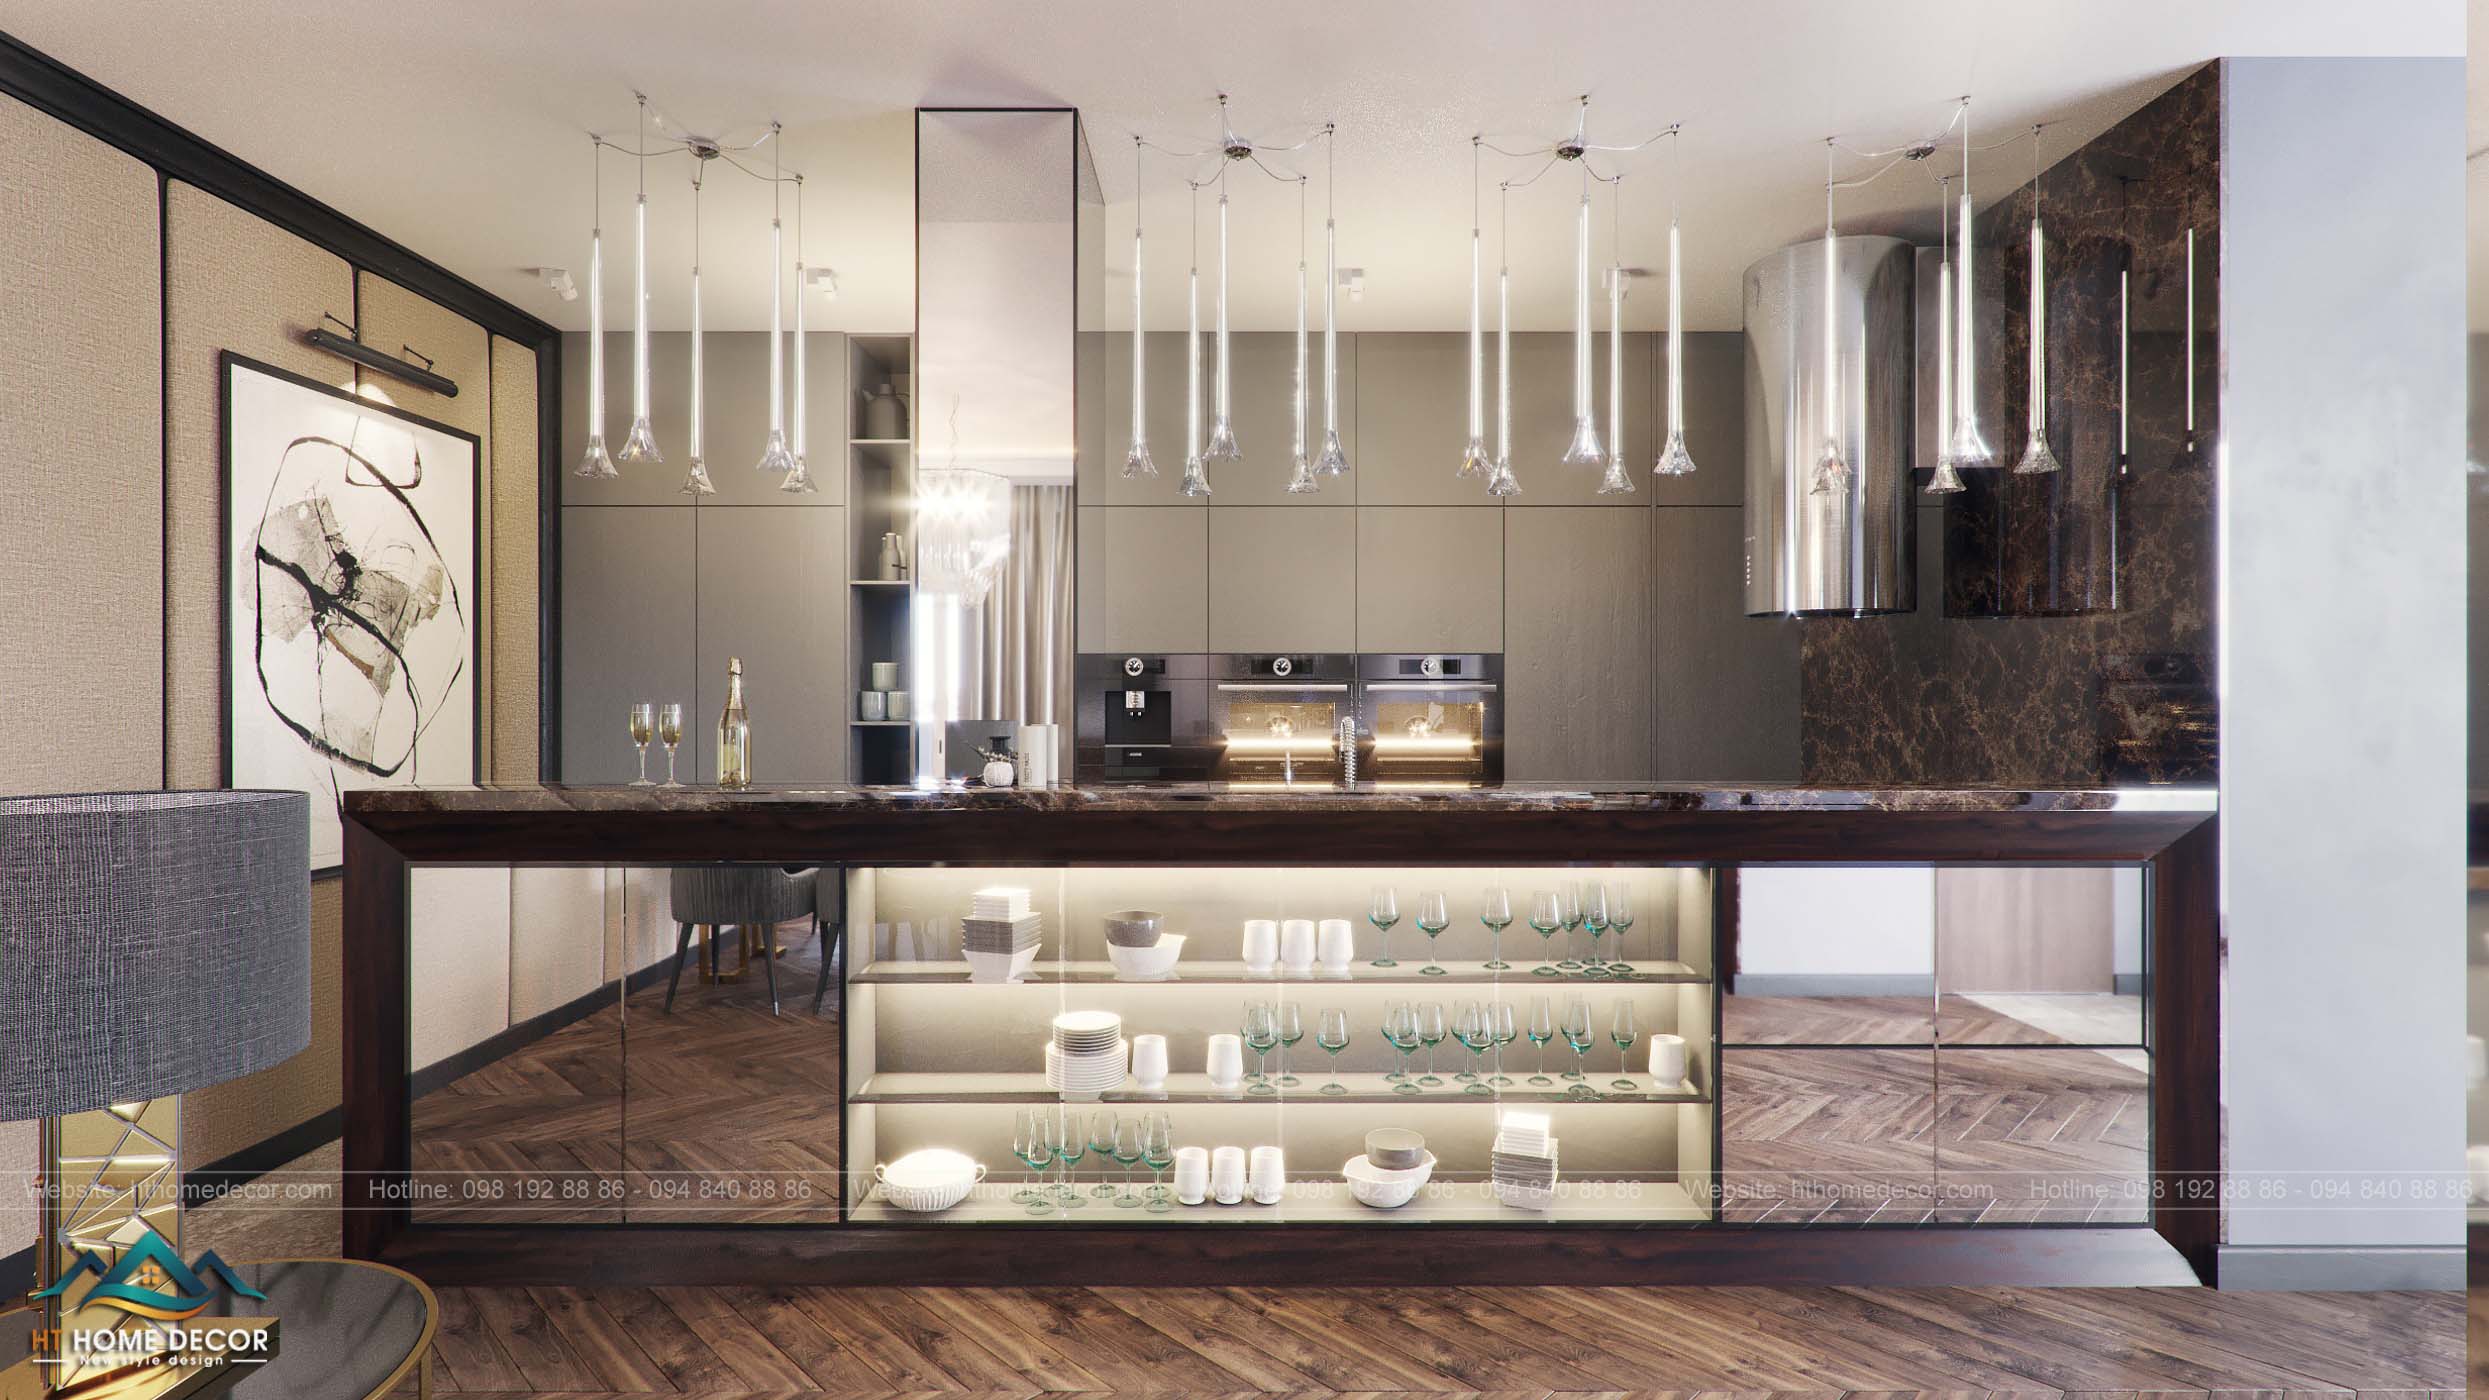 Tủ bếp rộng lớn và vô cùng hiện đại. Thay thế cho bức tường ngăn cách giữa phòng khách và nhà bếp. Một ý tưởng thiết kế độc đáo có đúng không nào?